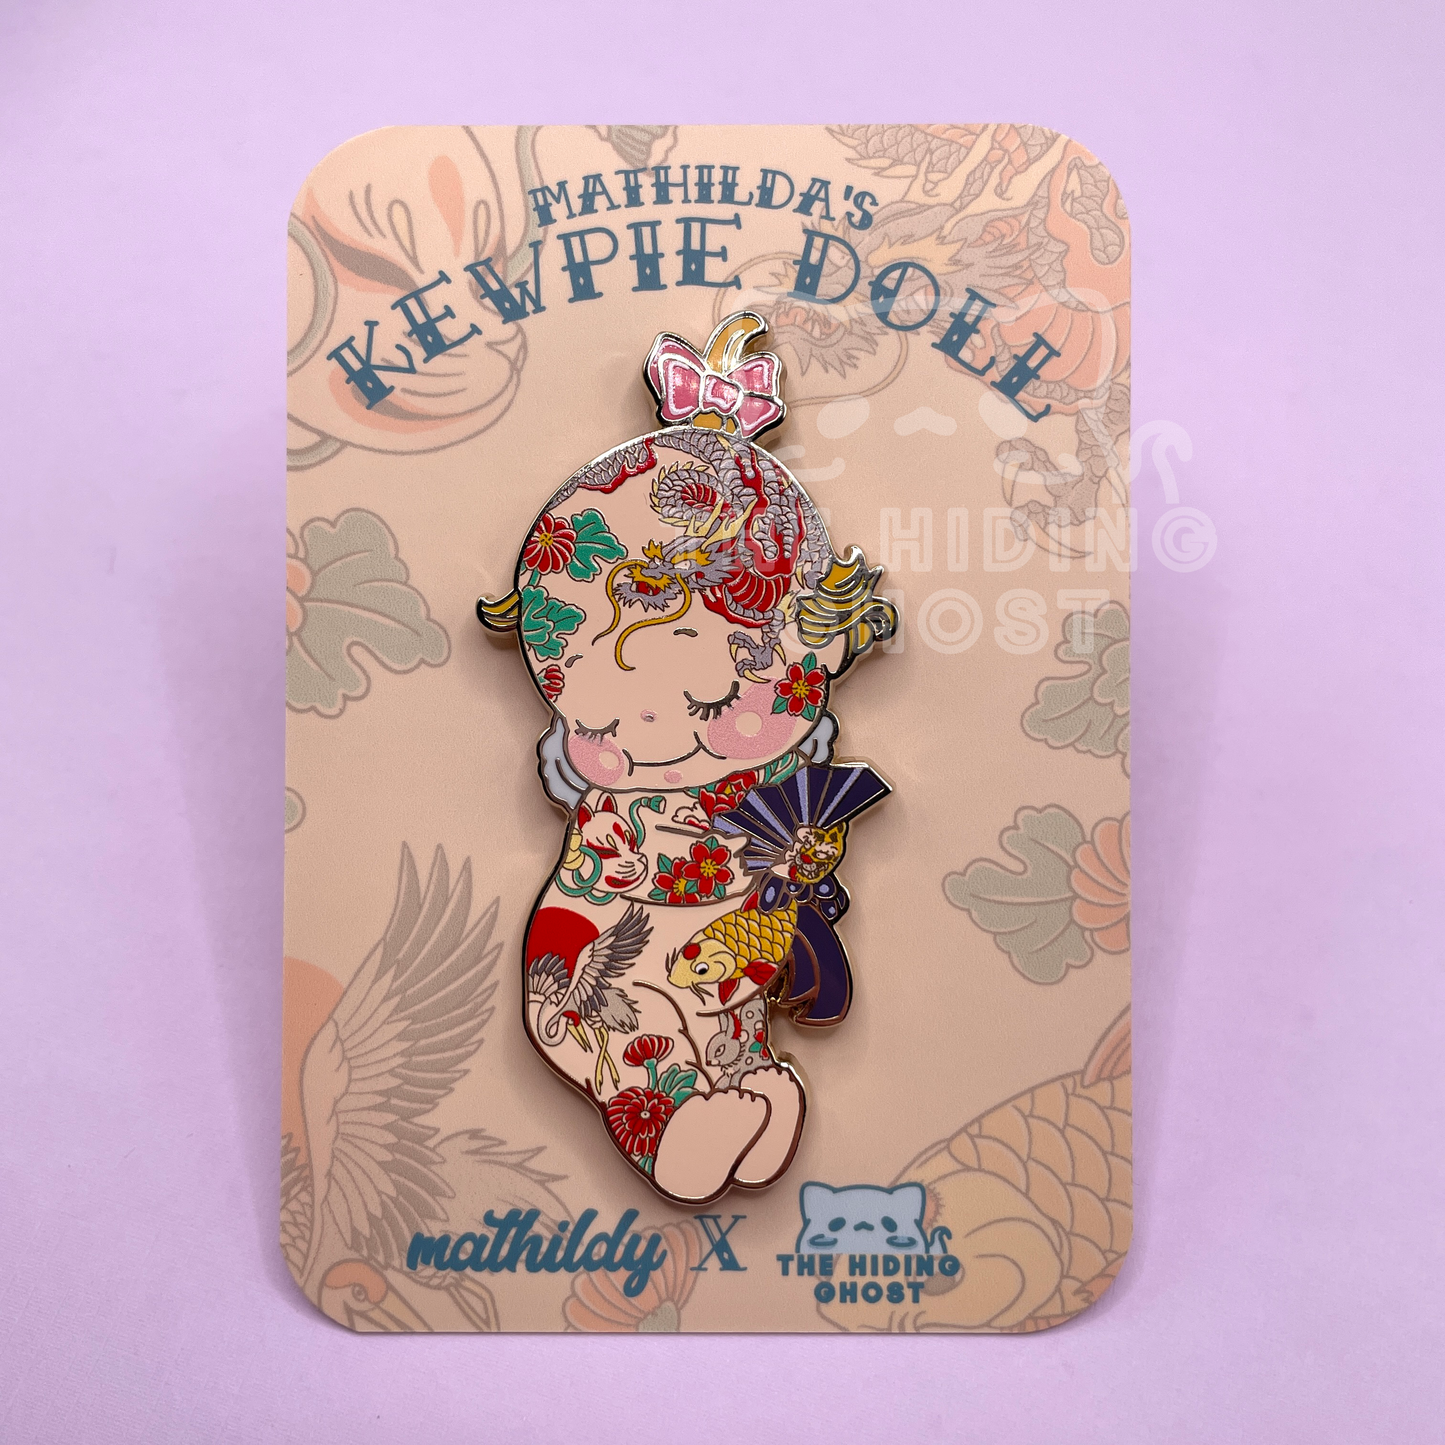 Mathilda's Kewpie Doll Enamel Pin